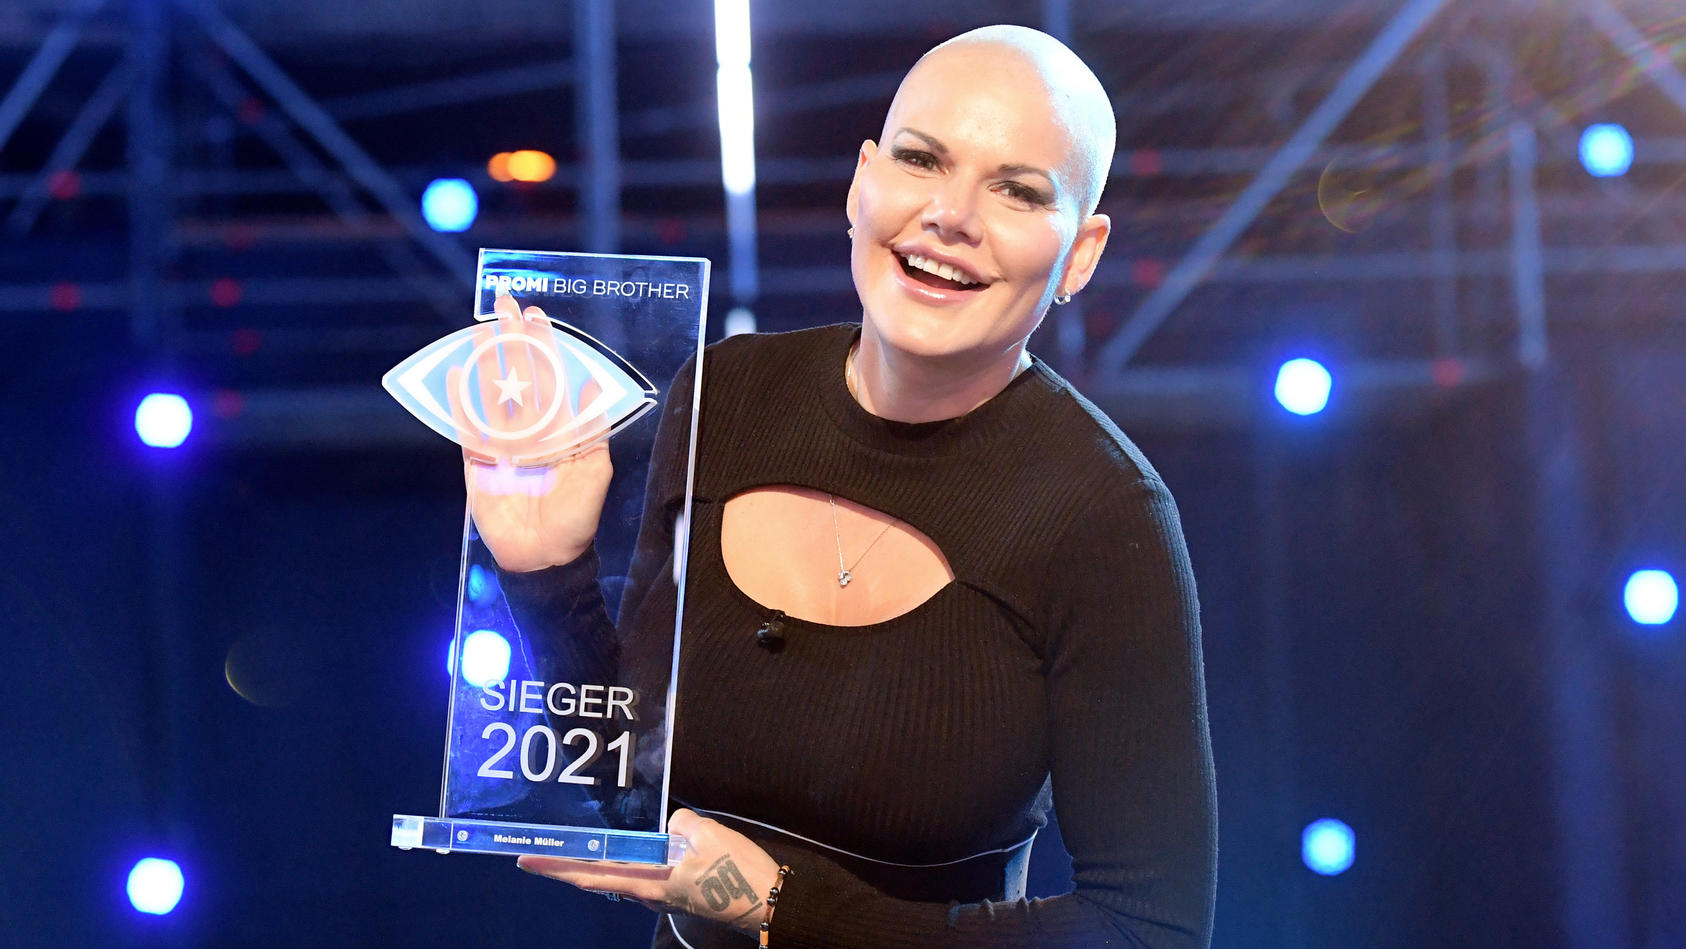 Melanie Müller ist die strahlende Siegerin von "Promi Big Brother" 2021. 